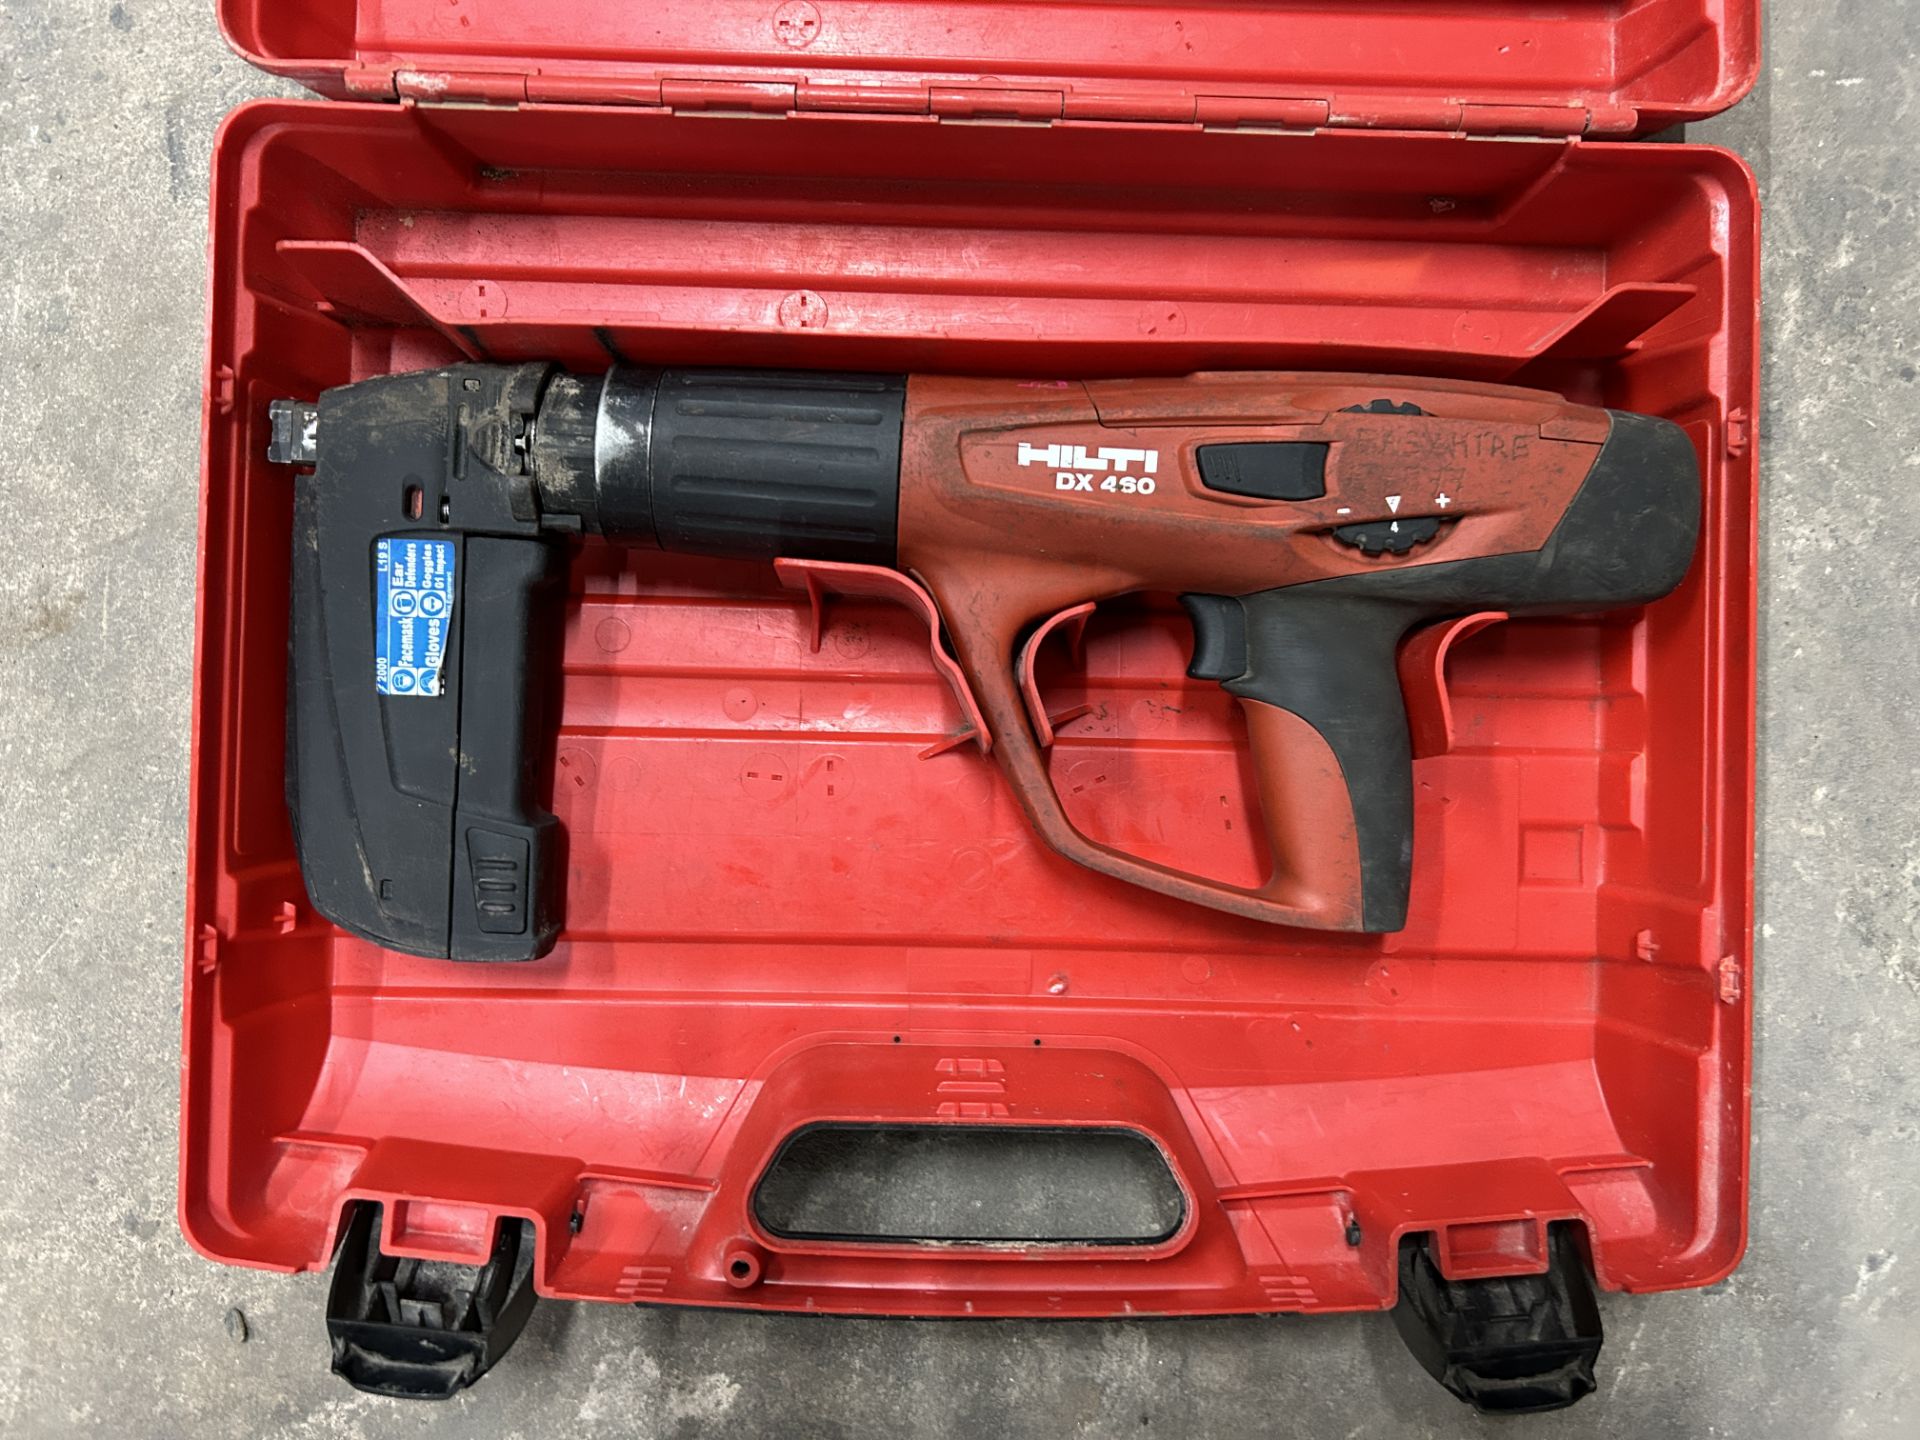 Hilti DX 460 Powder Actuated Nail Gun in Case - Bild 2 aus 3